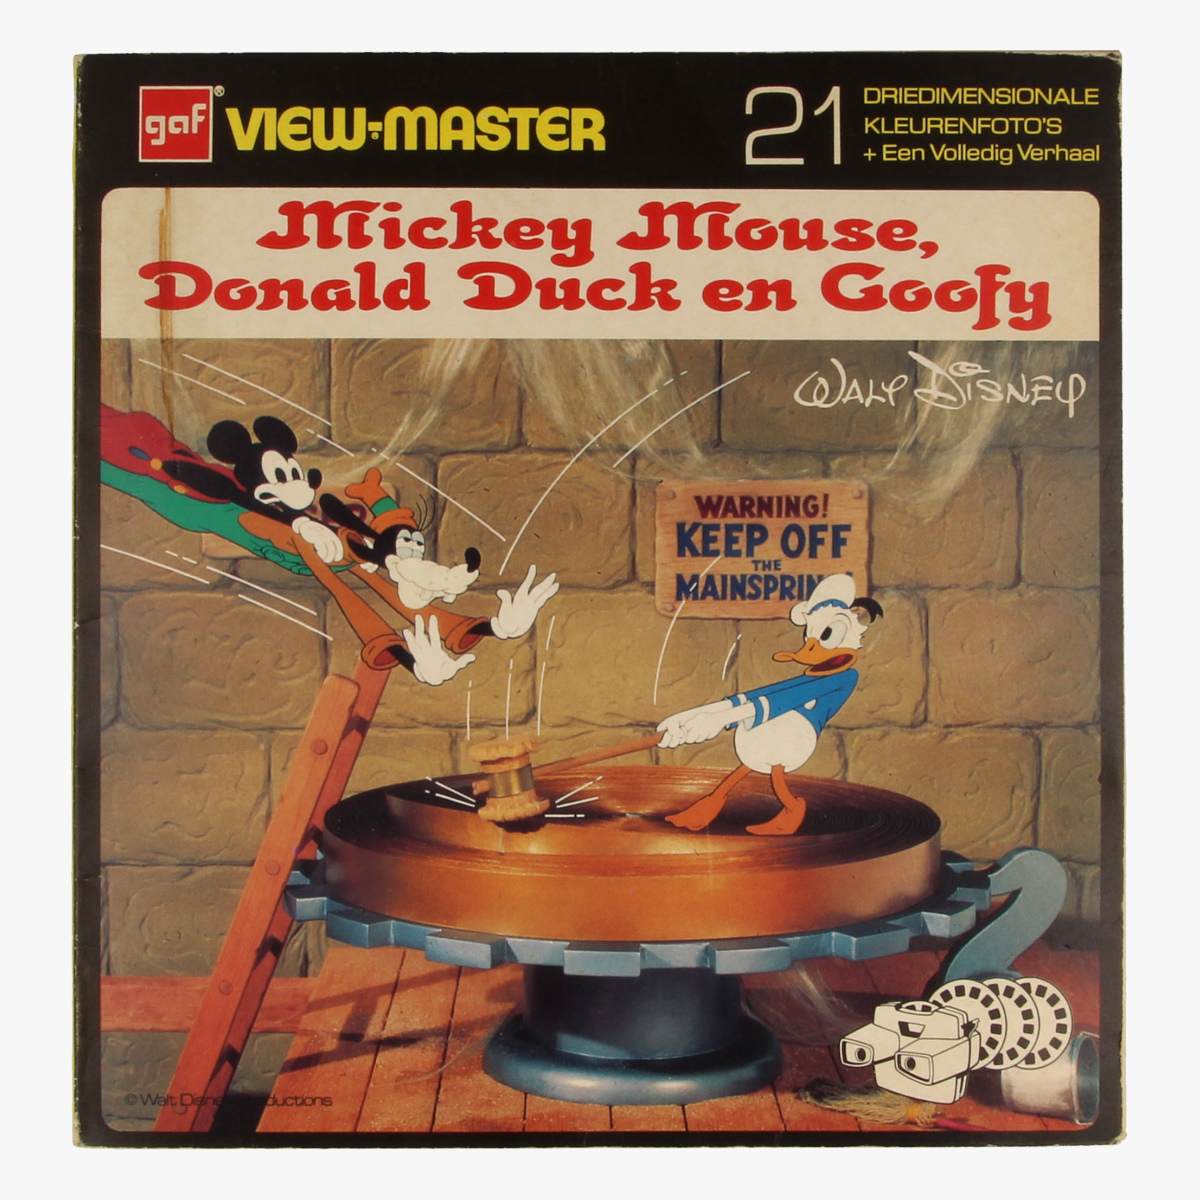 Afbeeldingen van View-master Mickey mouse, Donald6686470334633 duck en Goofy B5511,B5512,B5513